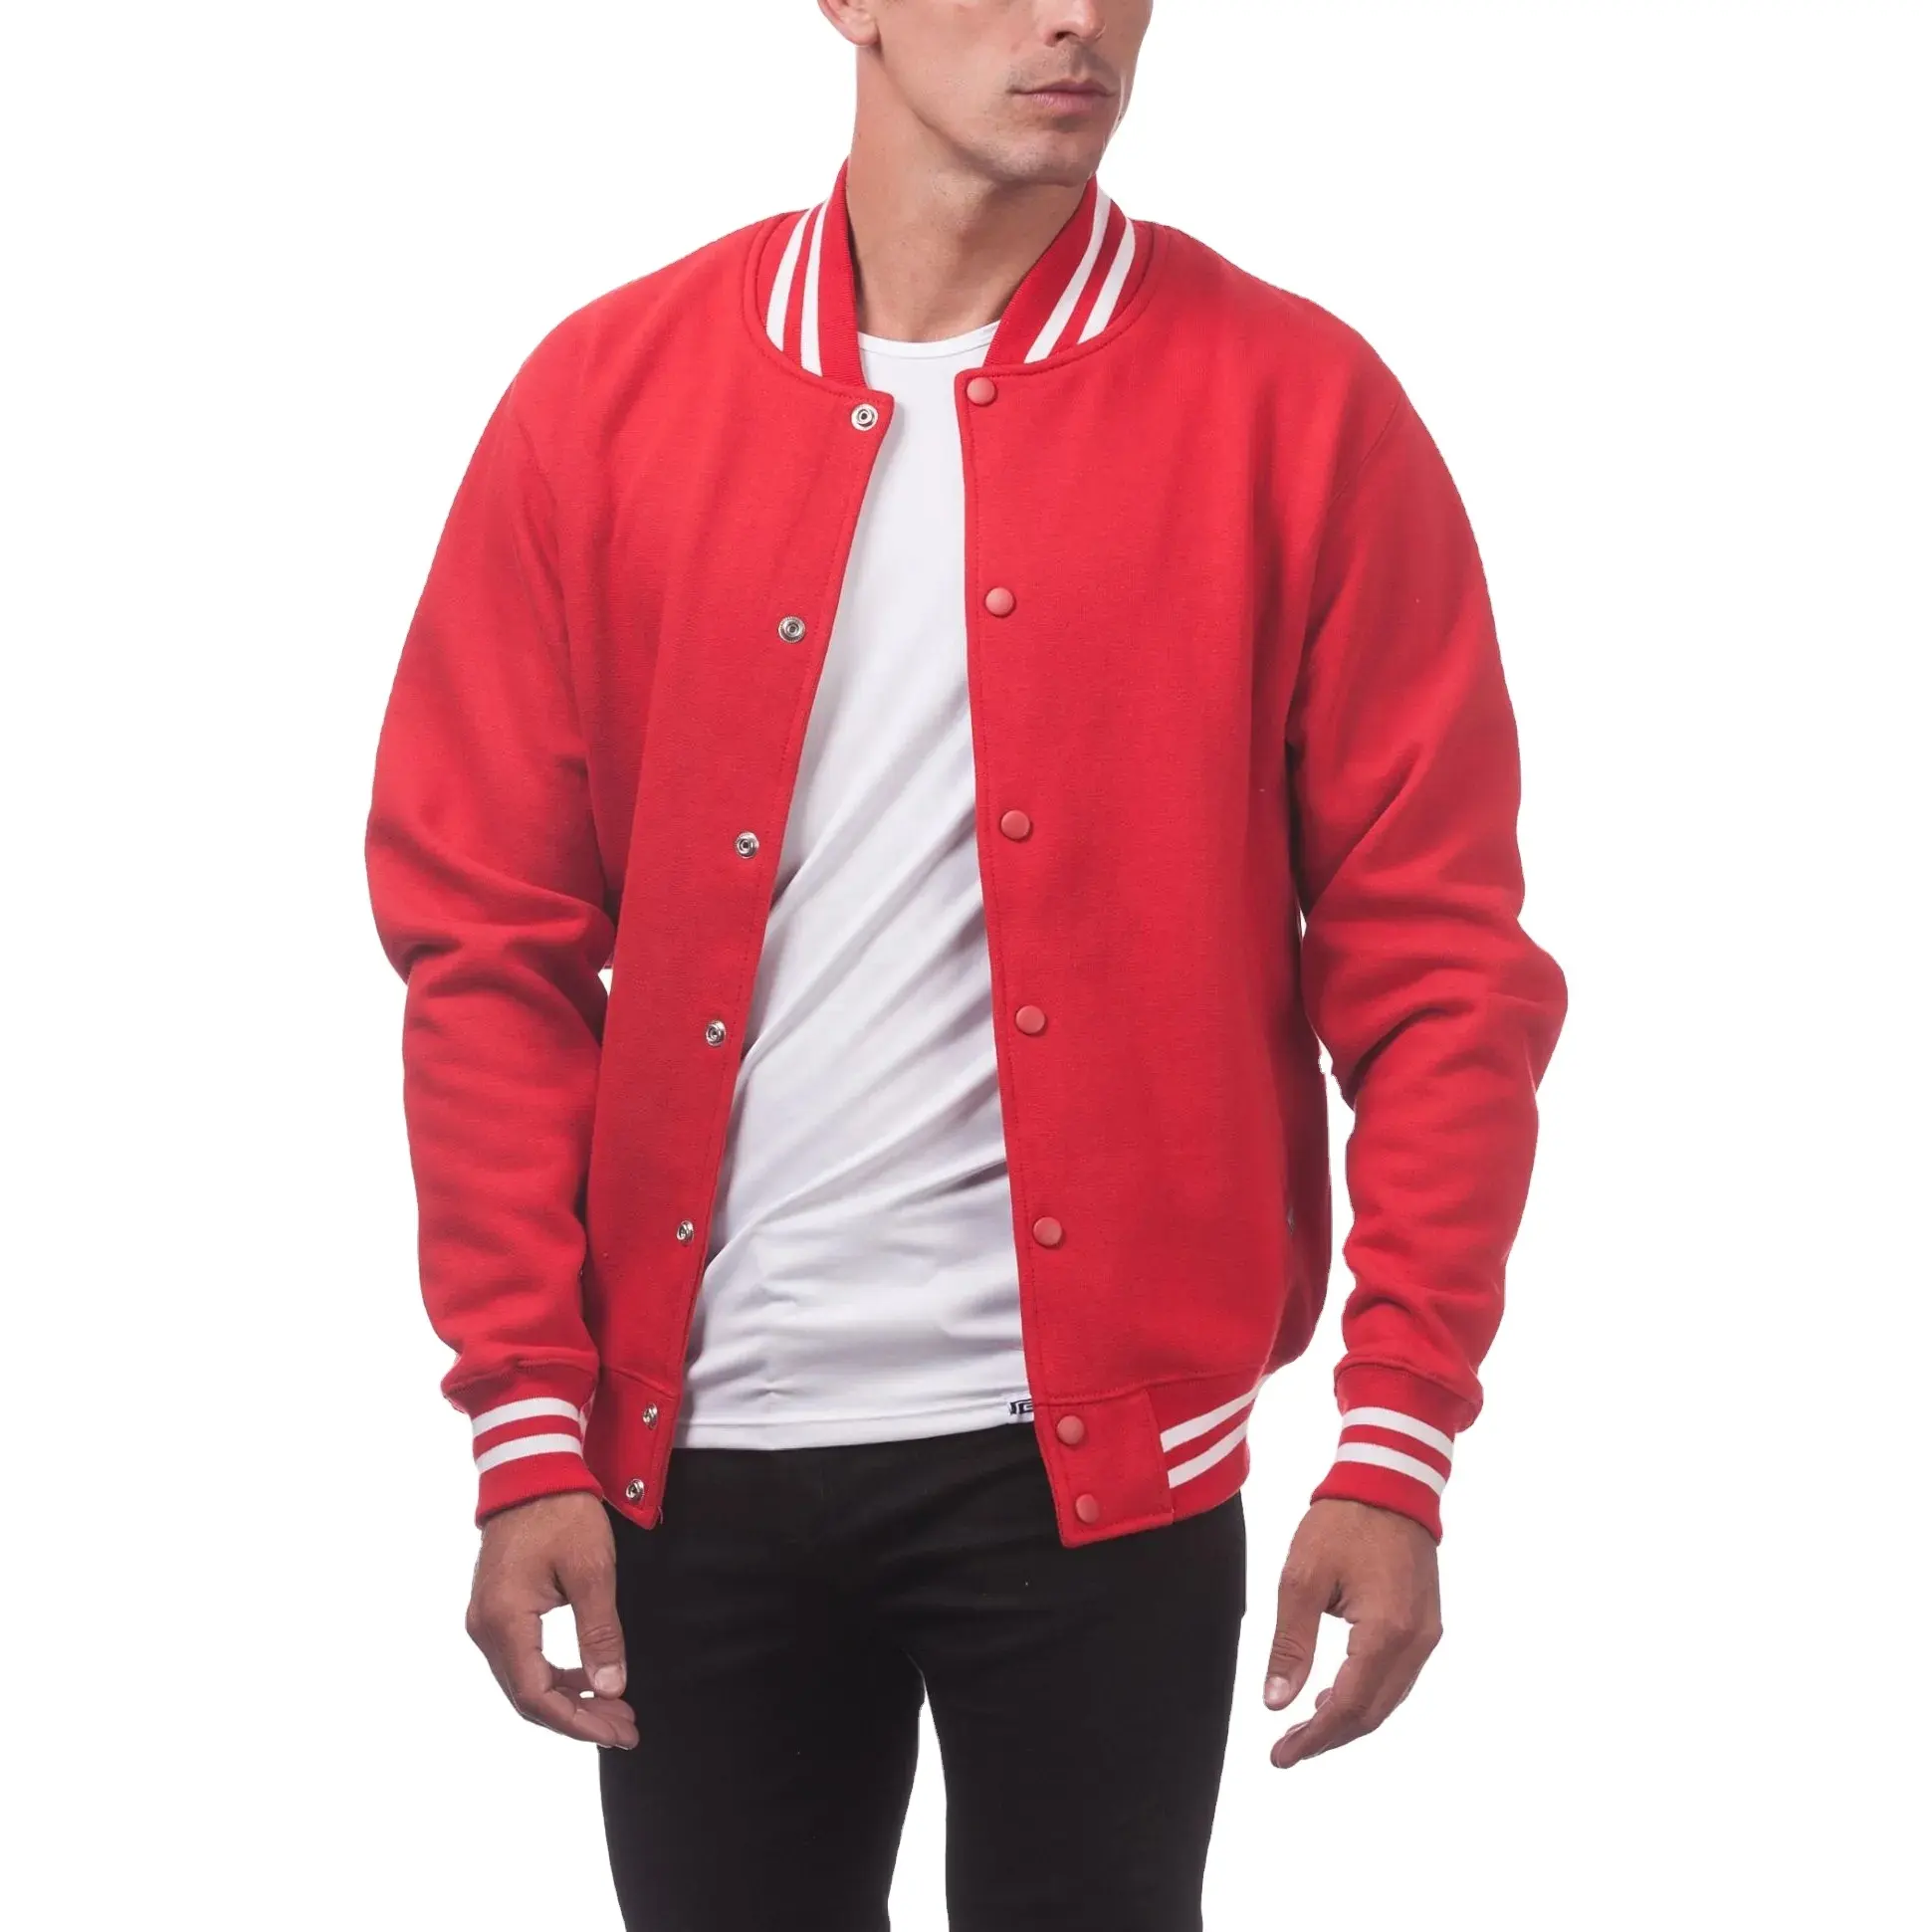 Design personnalisé pour hommes Vêtements de collège de rue pour hommes Veste universitaire unie en laine rouge boutonnée Vestes universitaires unisexe